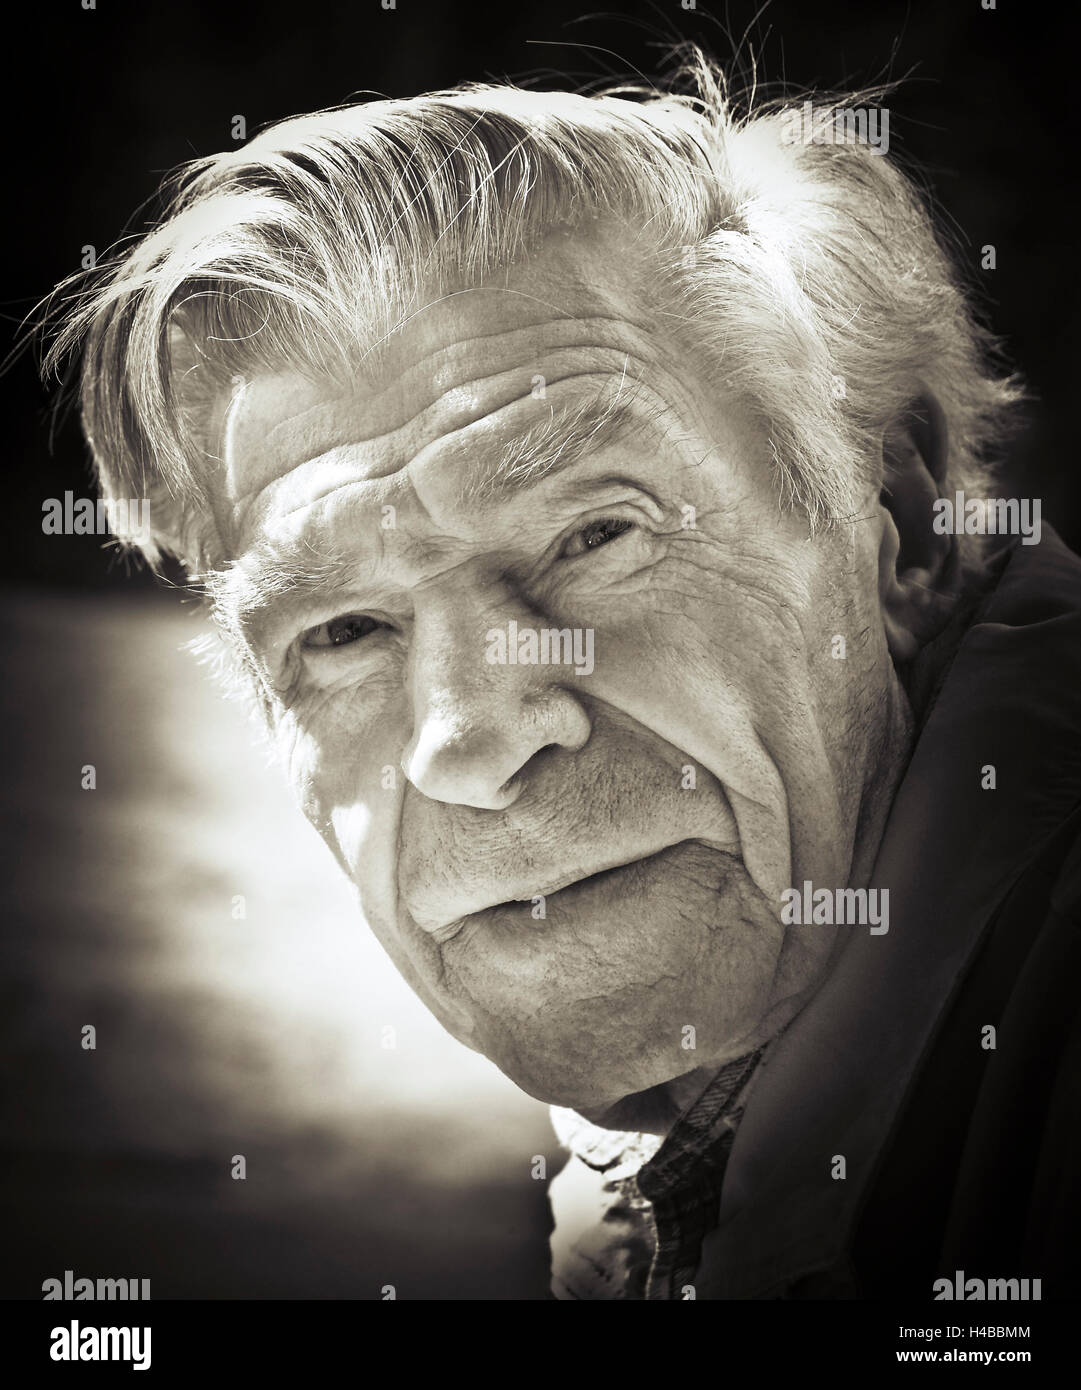 L'homme, senior, retraité, portrait, 70-80 ans, b/w Banque D'Images